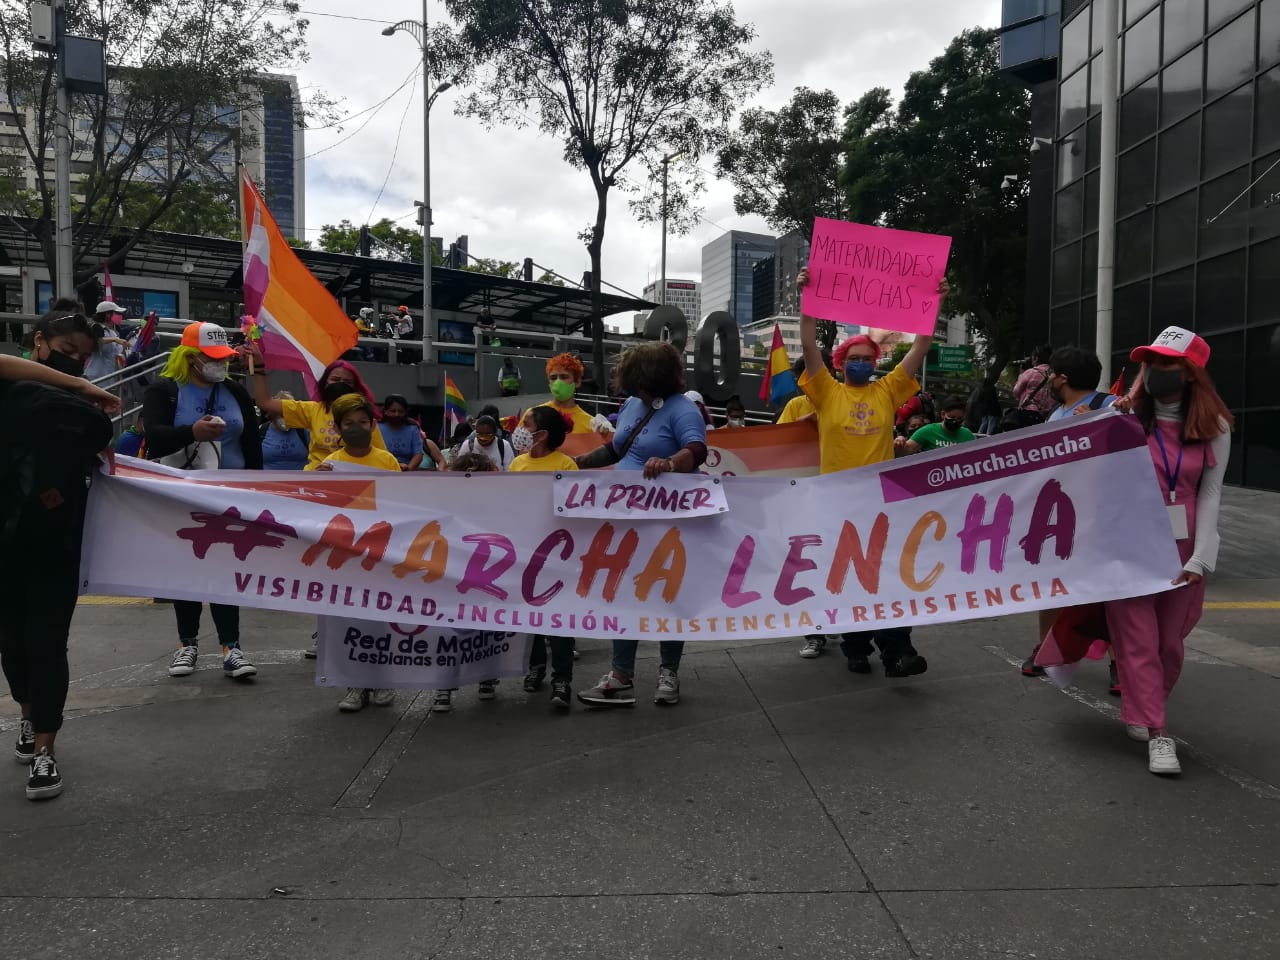 Marcha Lencha 2021, la primera manifestación transincluyente